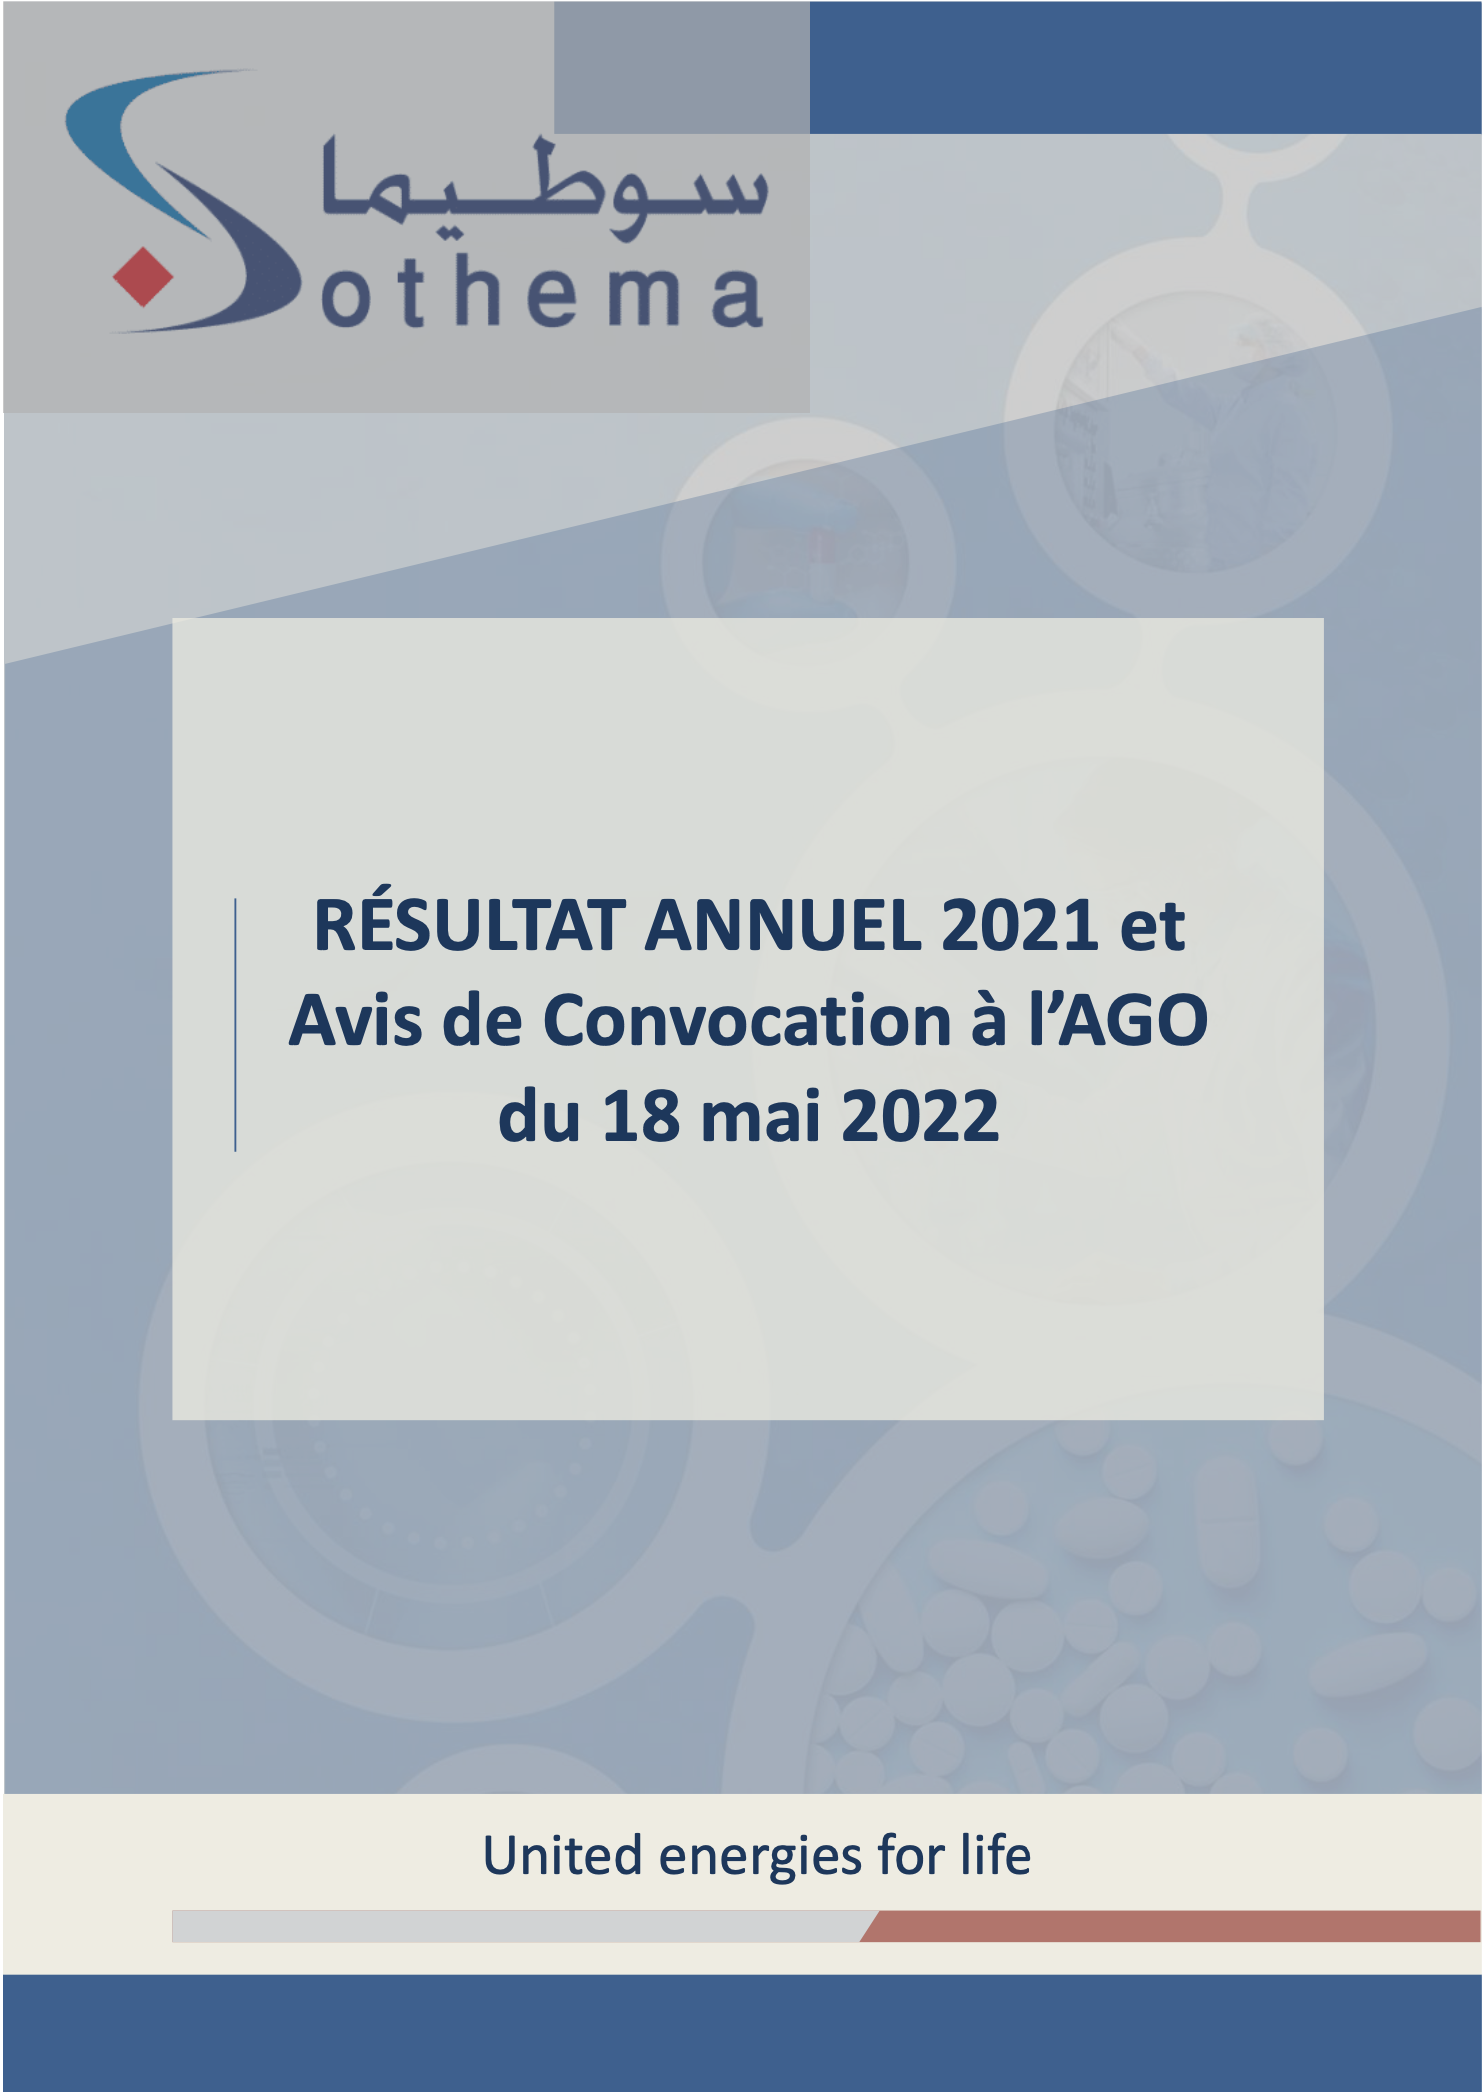 SOTHEMA : Résultat Annuel 2021 et Avis de Convocation à l'AGO du 18 mai 2022.»